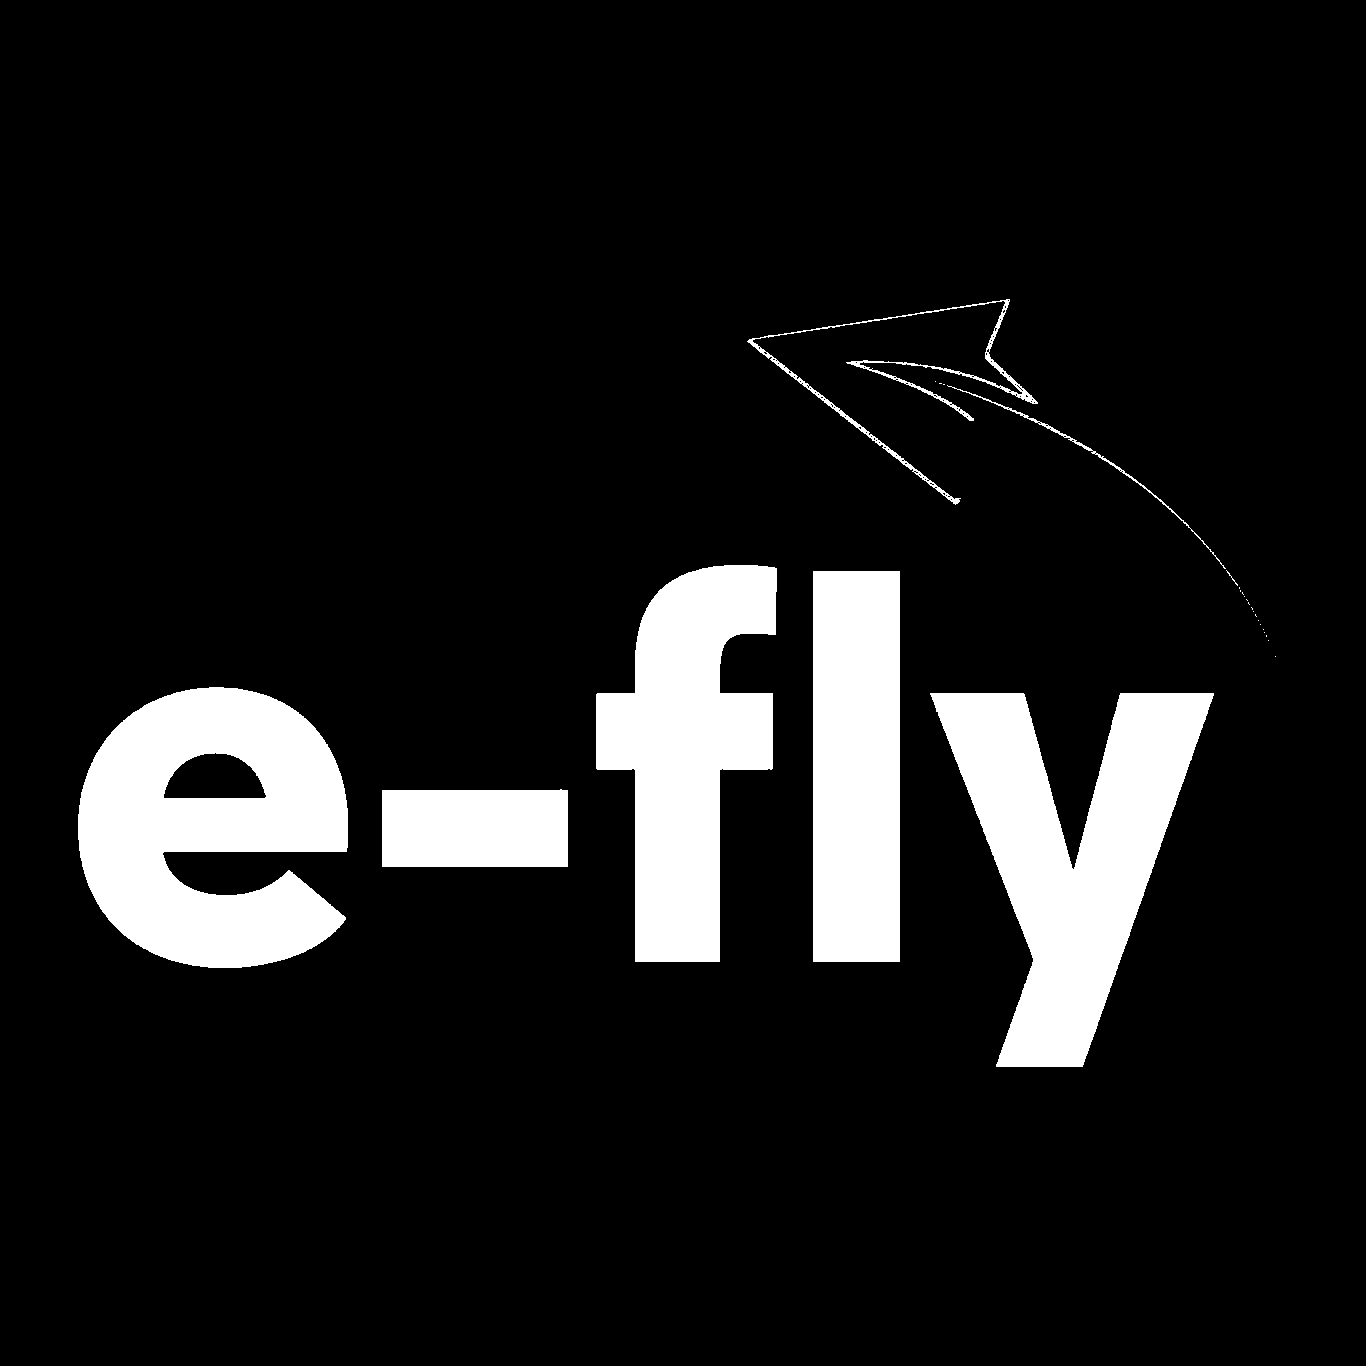 E-Fly